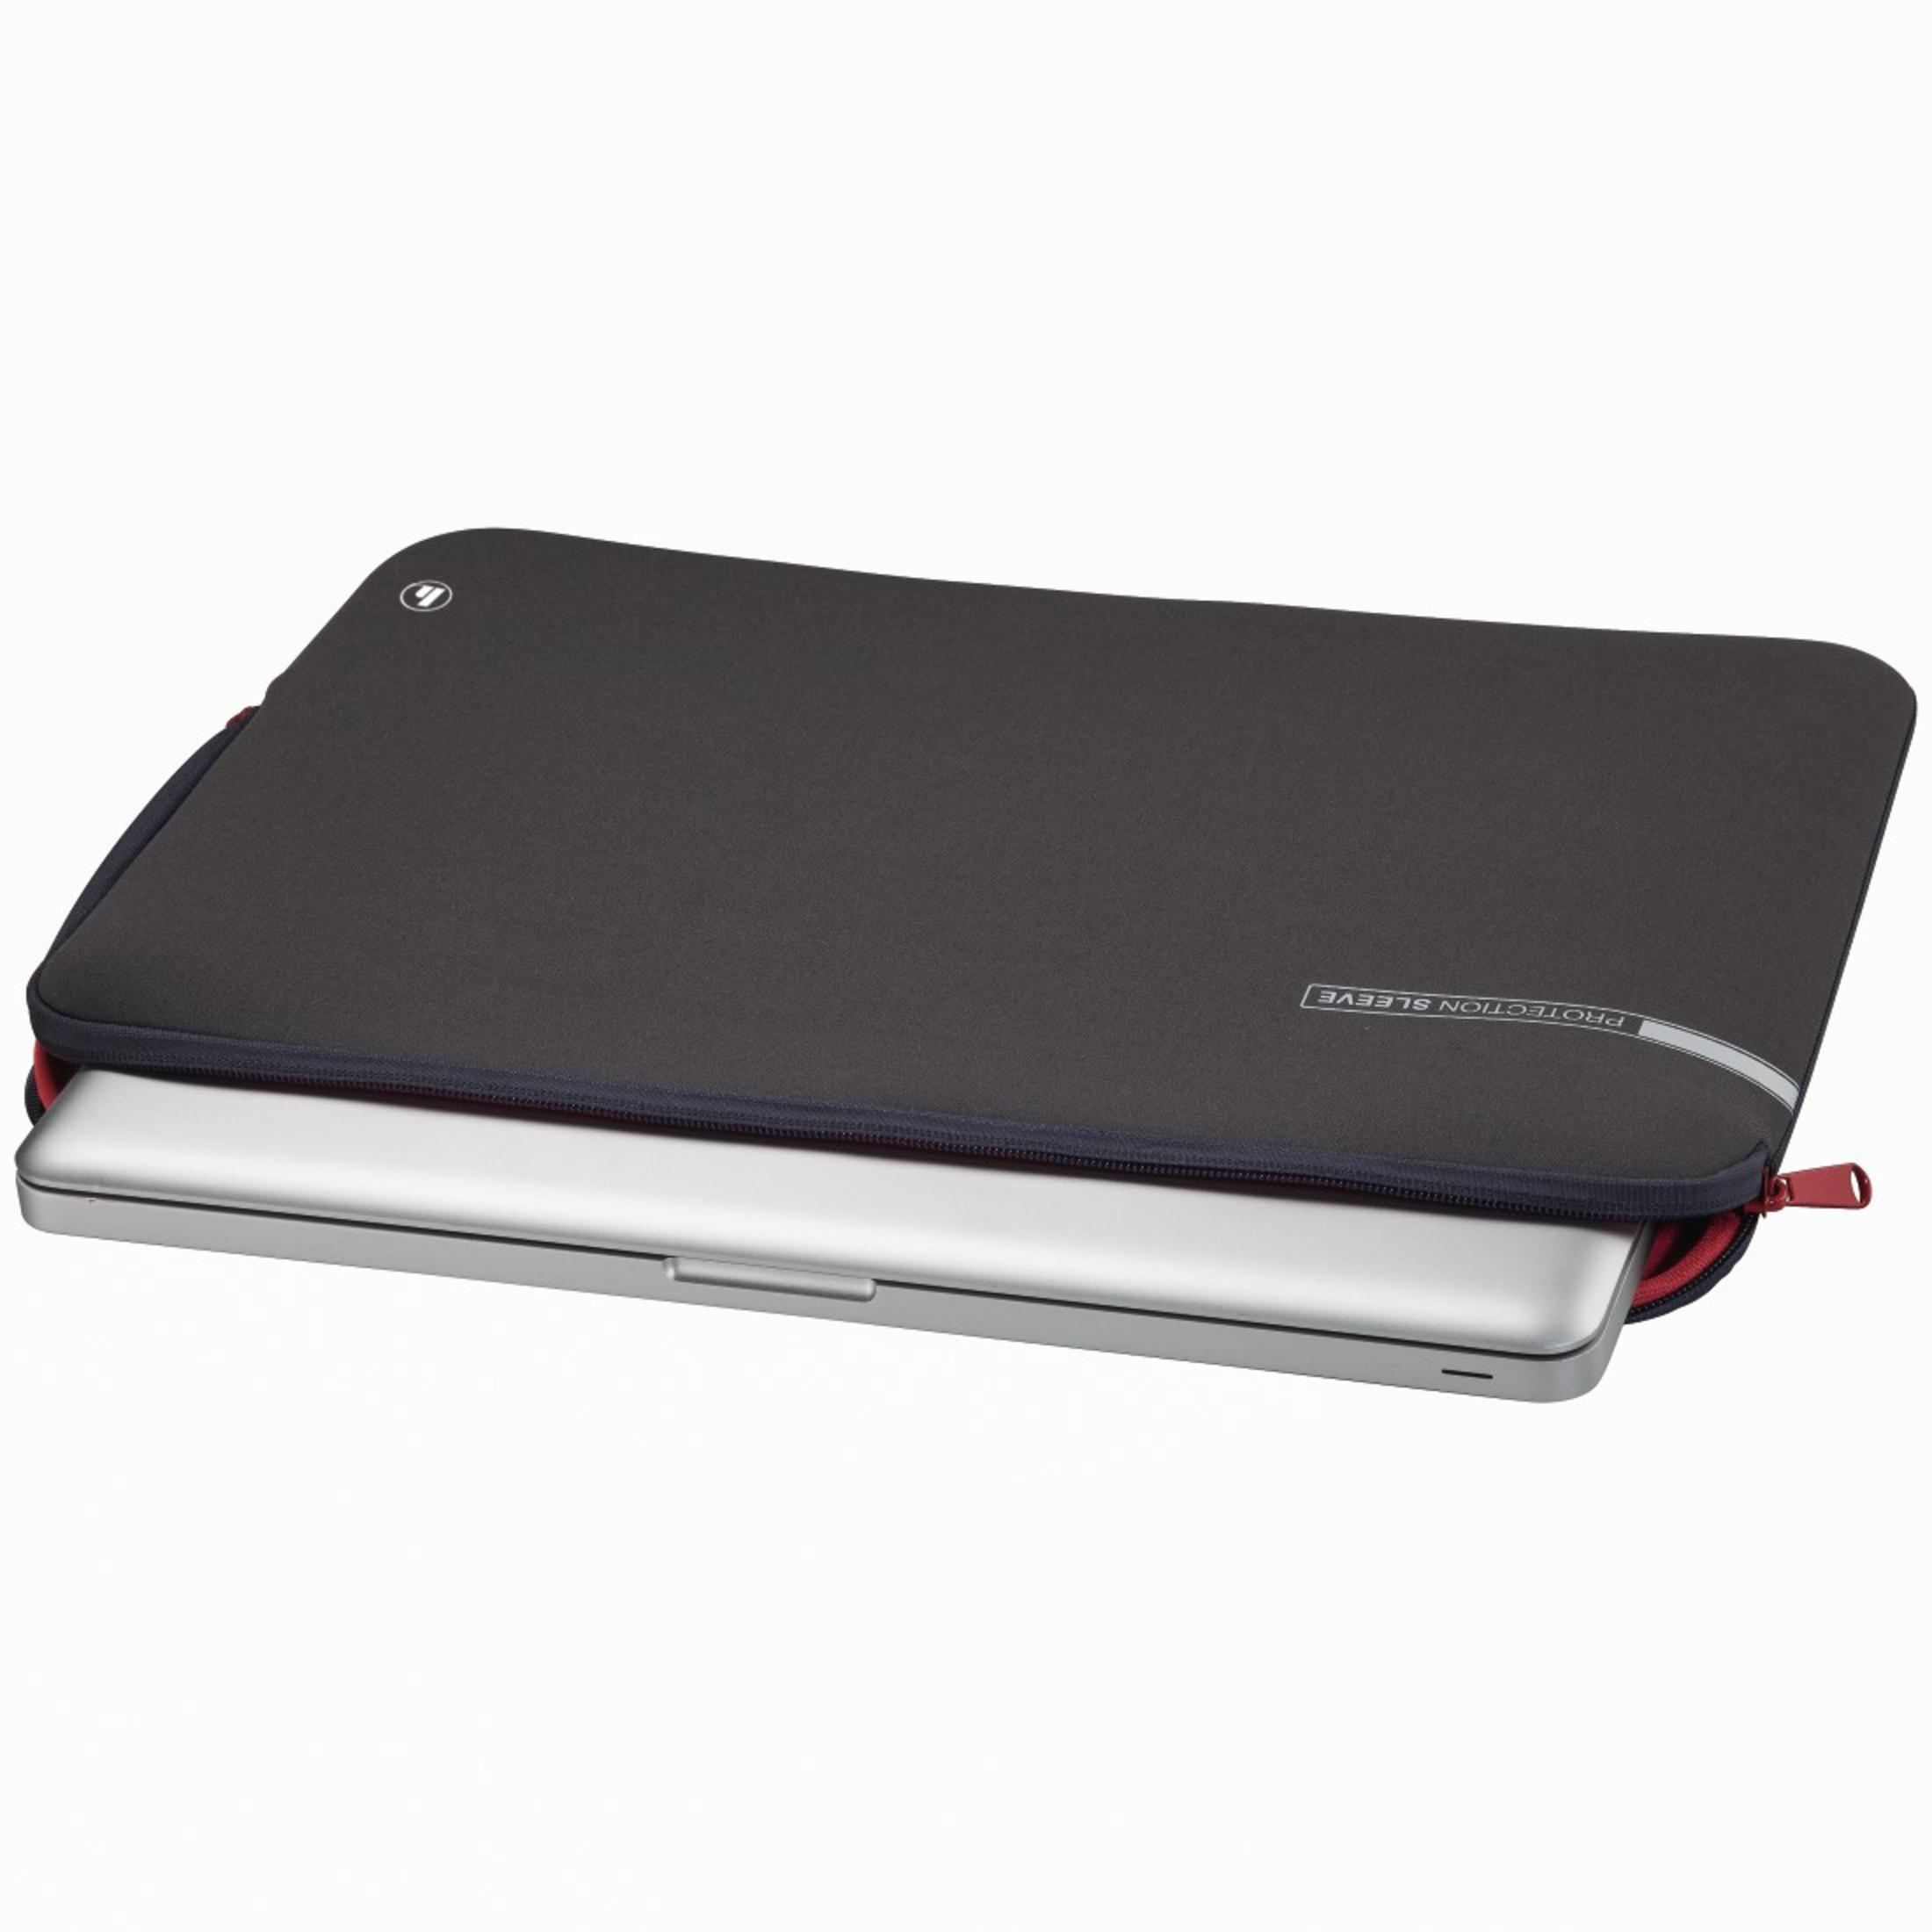 Universal GR Neopren, Notebooktasche Sleeve HAMA NB-SLE Grau/Rot 101551 für 17.3 NEO